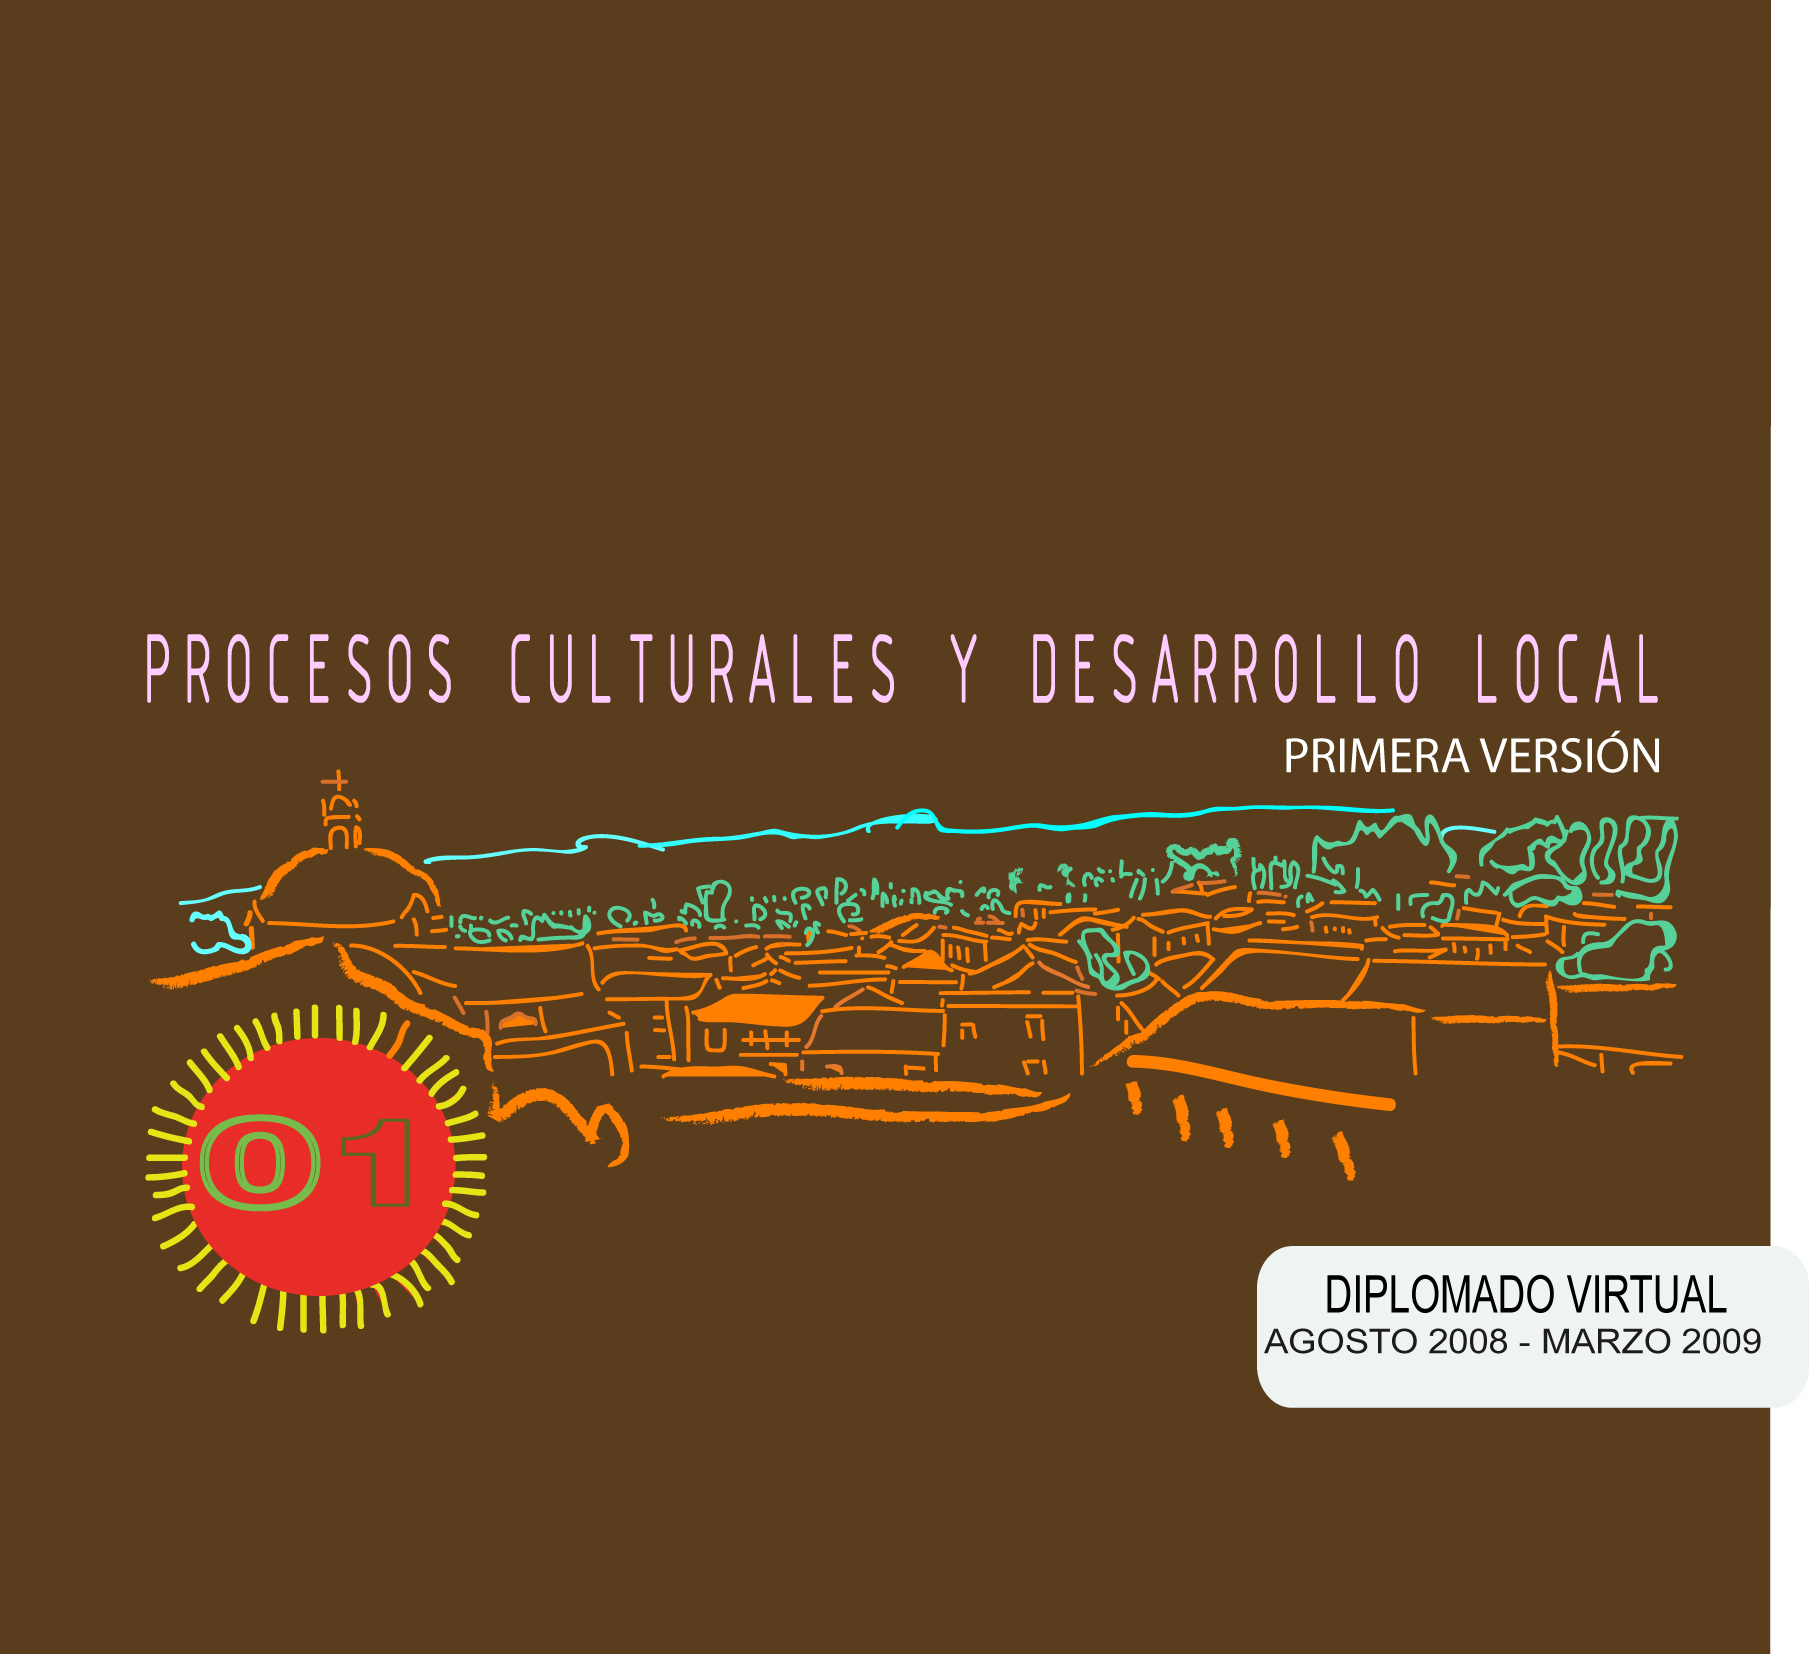 Diplomado Virtual Proceso Culturales y Desarrollo Local